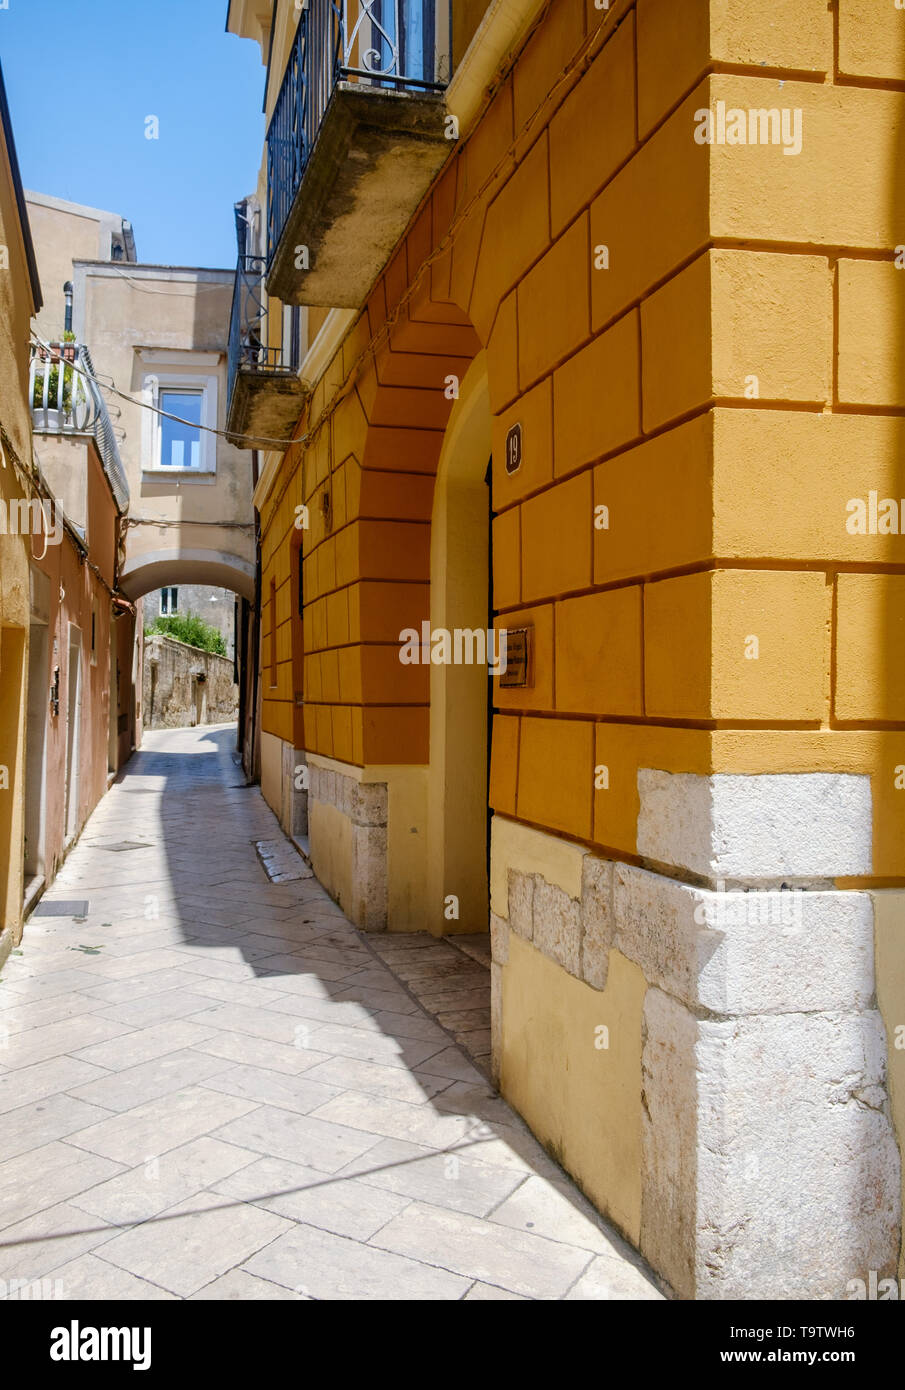 A strong orange facade lies alongside an alley in the historical center of Sant'Agata de' Goti, a stunning Italian village. Stock Photo